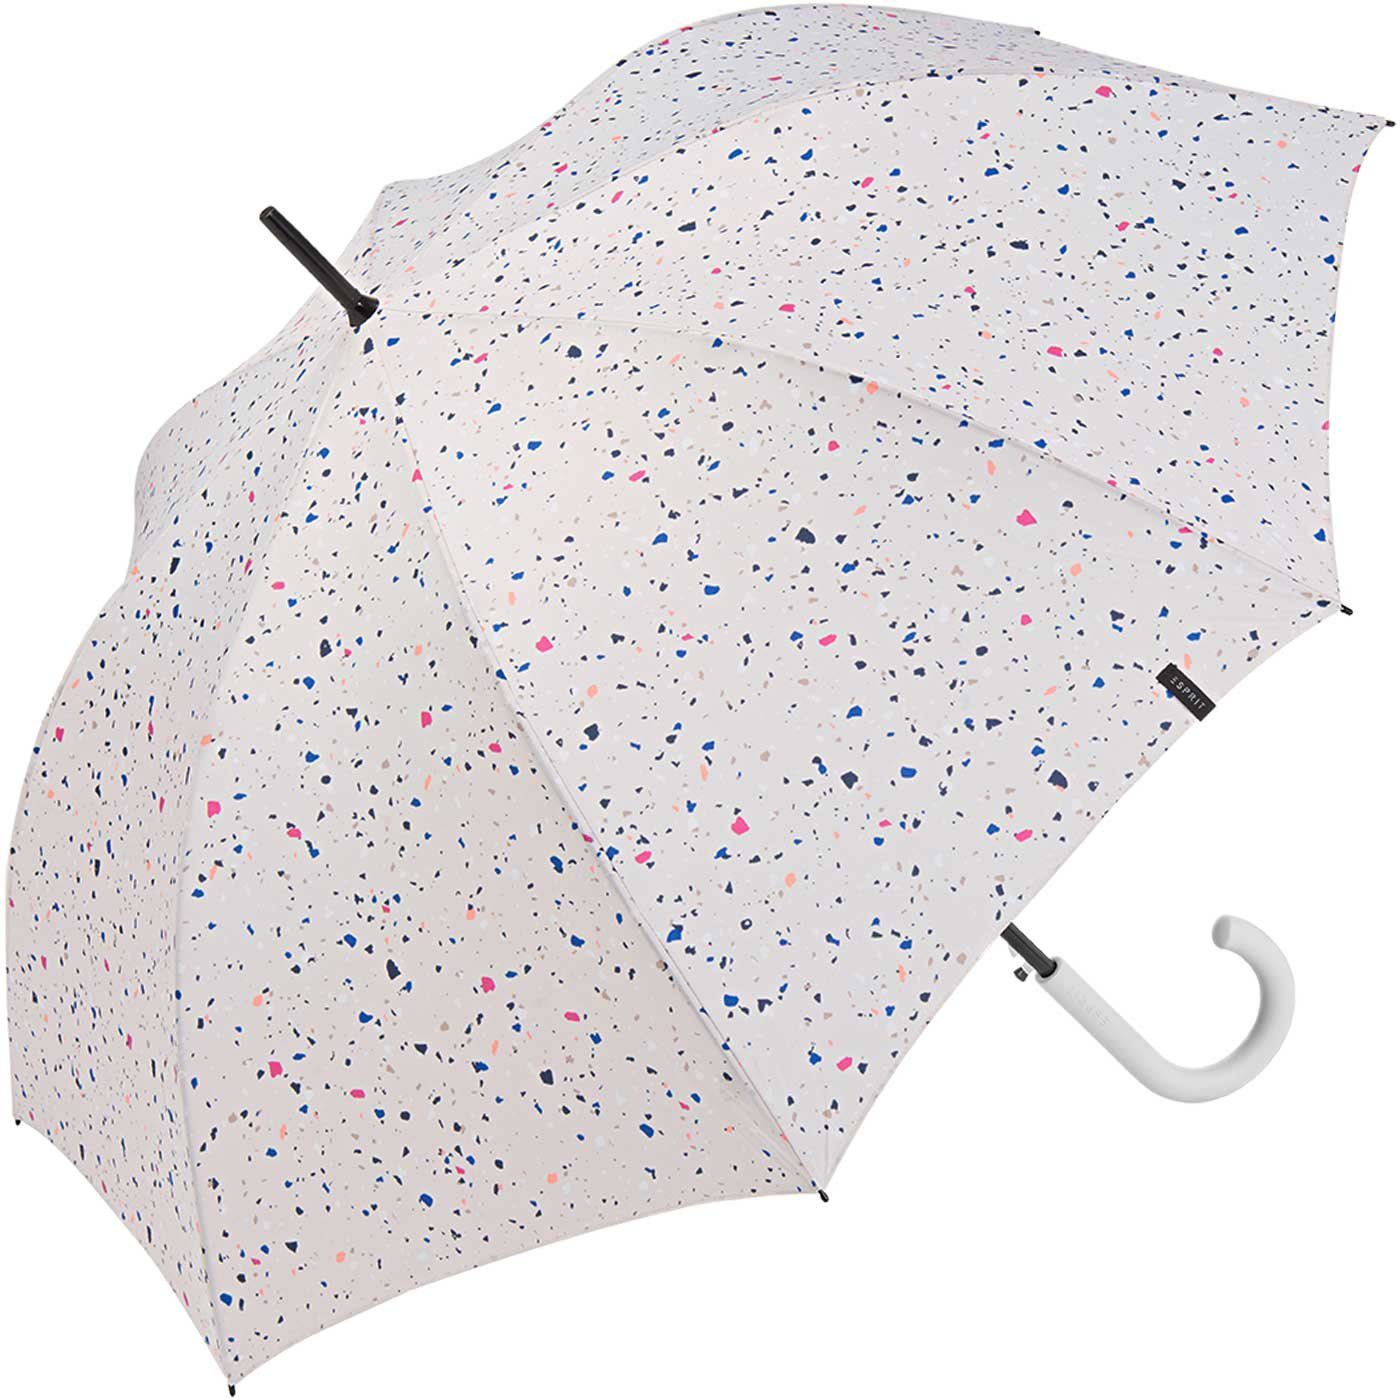 Esprit Langregenschirm Damen Auf-Automatik - - Dots verspieltem Sternenmuster mit stabil, groß, weiß, Terrazzo